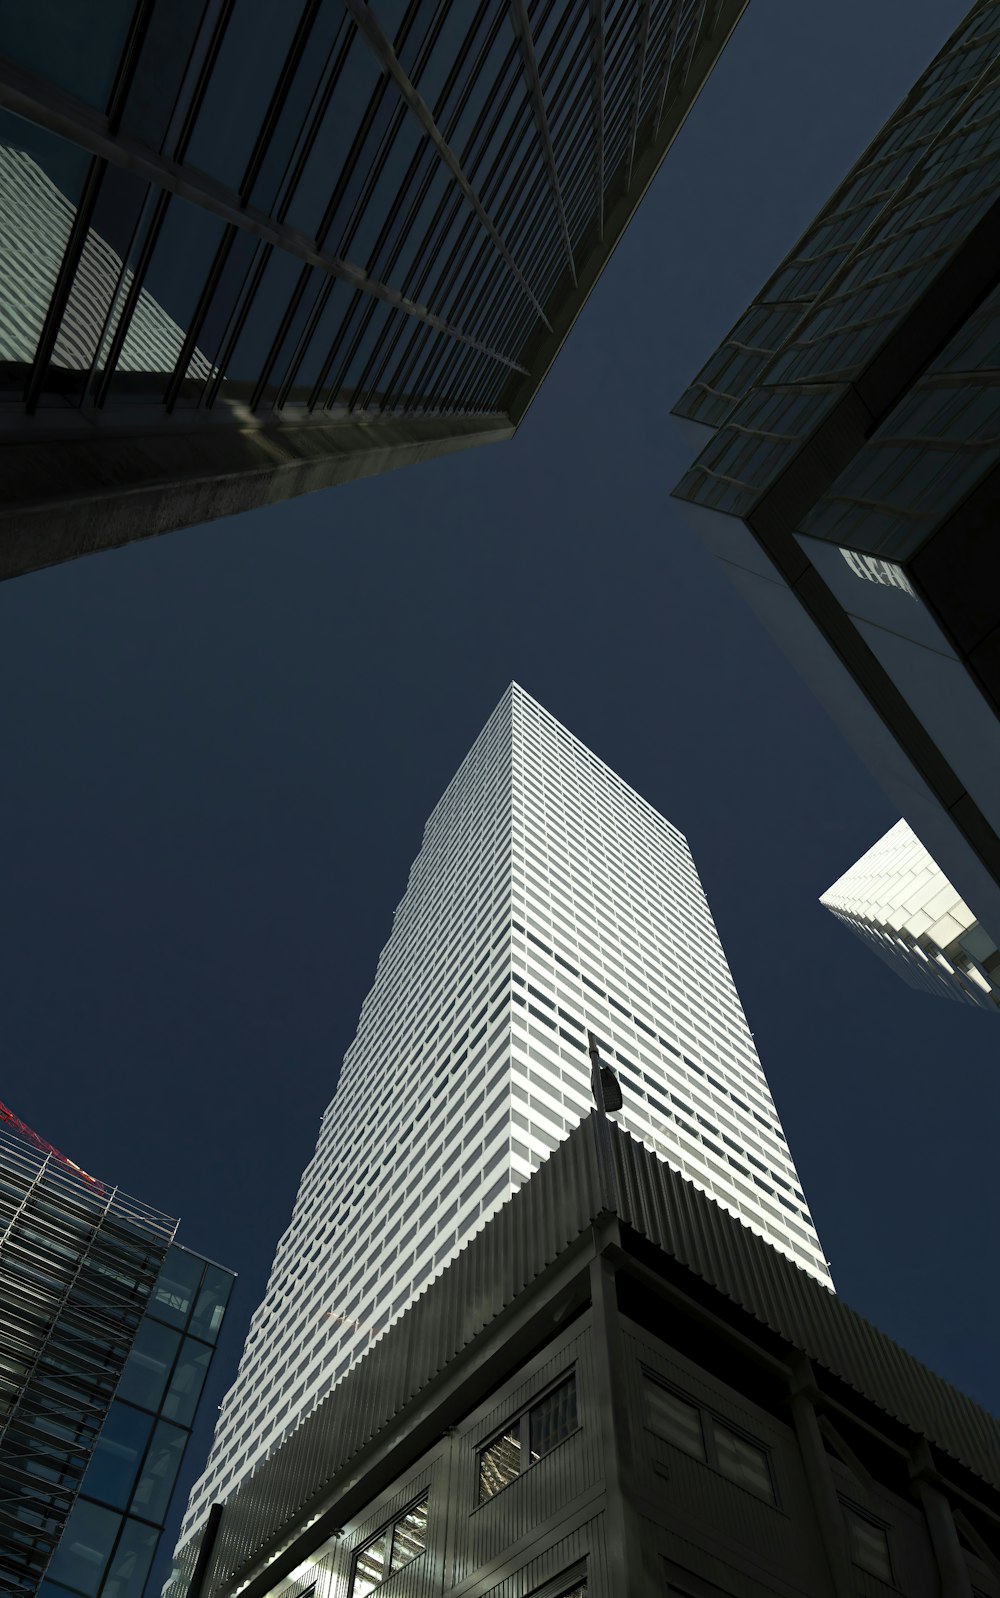 olhando para cima em um edifício alto em uma cidade